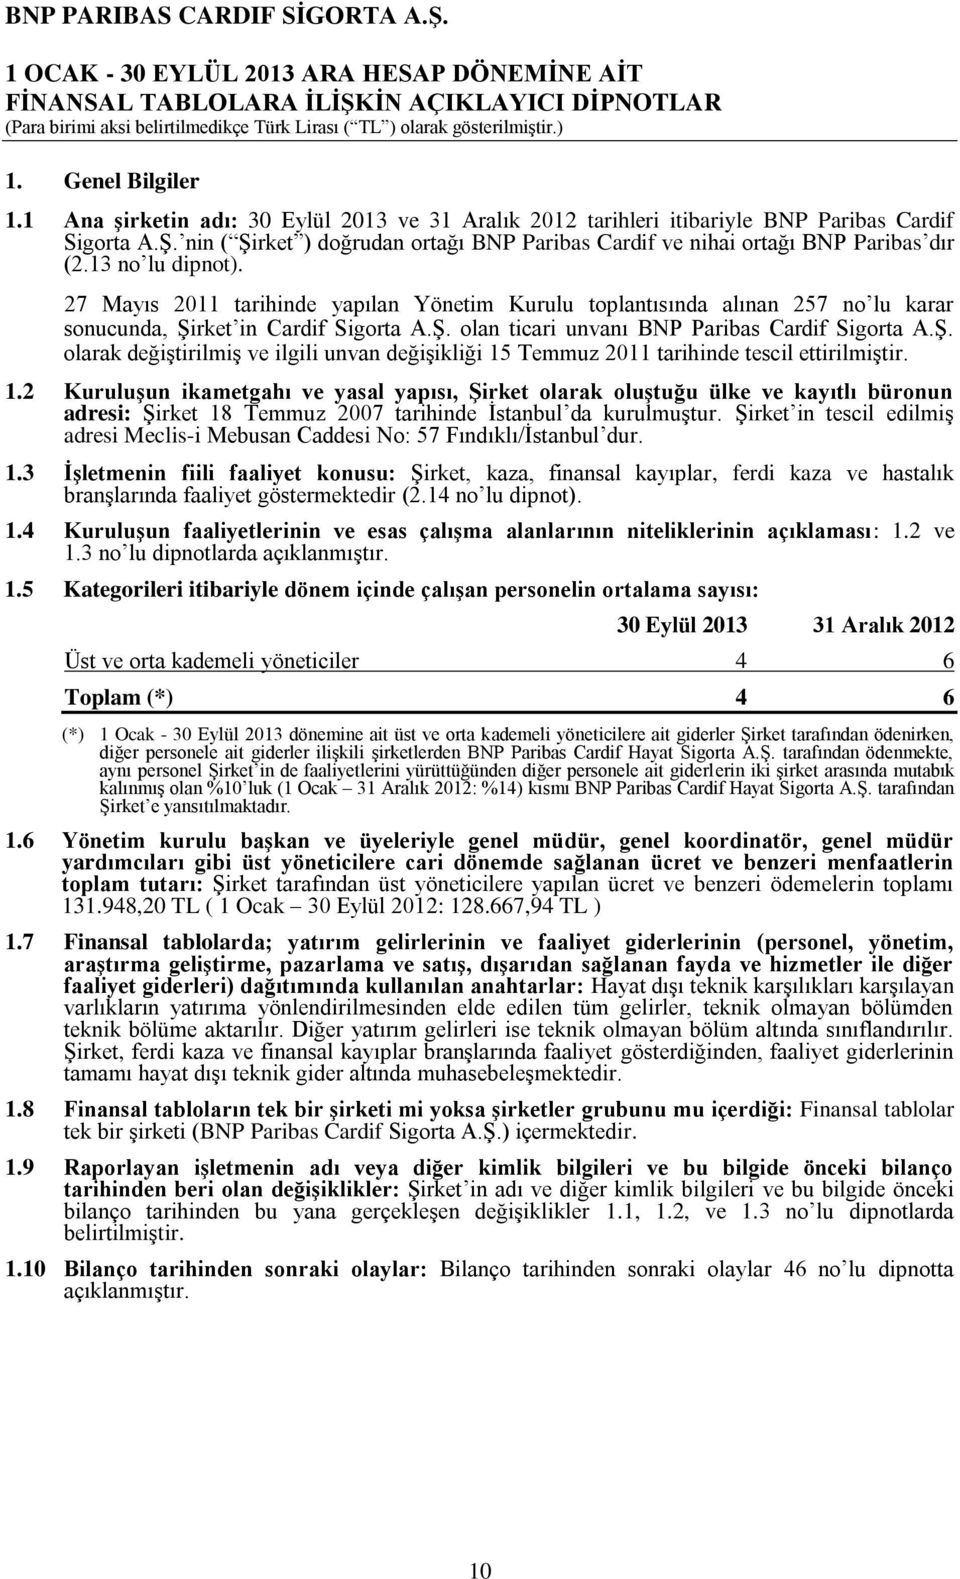 27 Mayıs 2011 tarihinde yapılan Yönetim Kurulu toplantısında alınan 257 no lu karar sonucunda, Şirket in Cardif Sigorta A.Ş. olan ticari unvanı BNP Paribas Cardif Sigorta A.Ş. olarak değiştirilmiş ve ilgili unvan değişikliği 15 Temmuz 2011 tarihinde tescil ettirilmiştir.